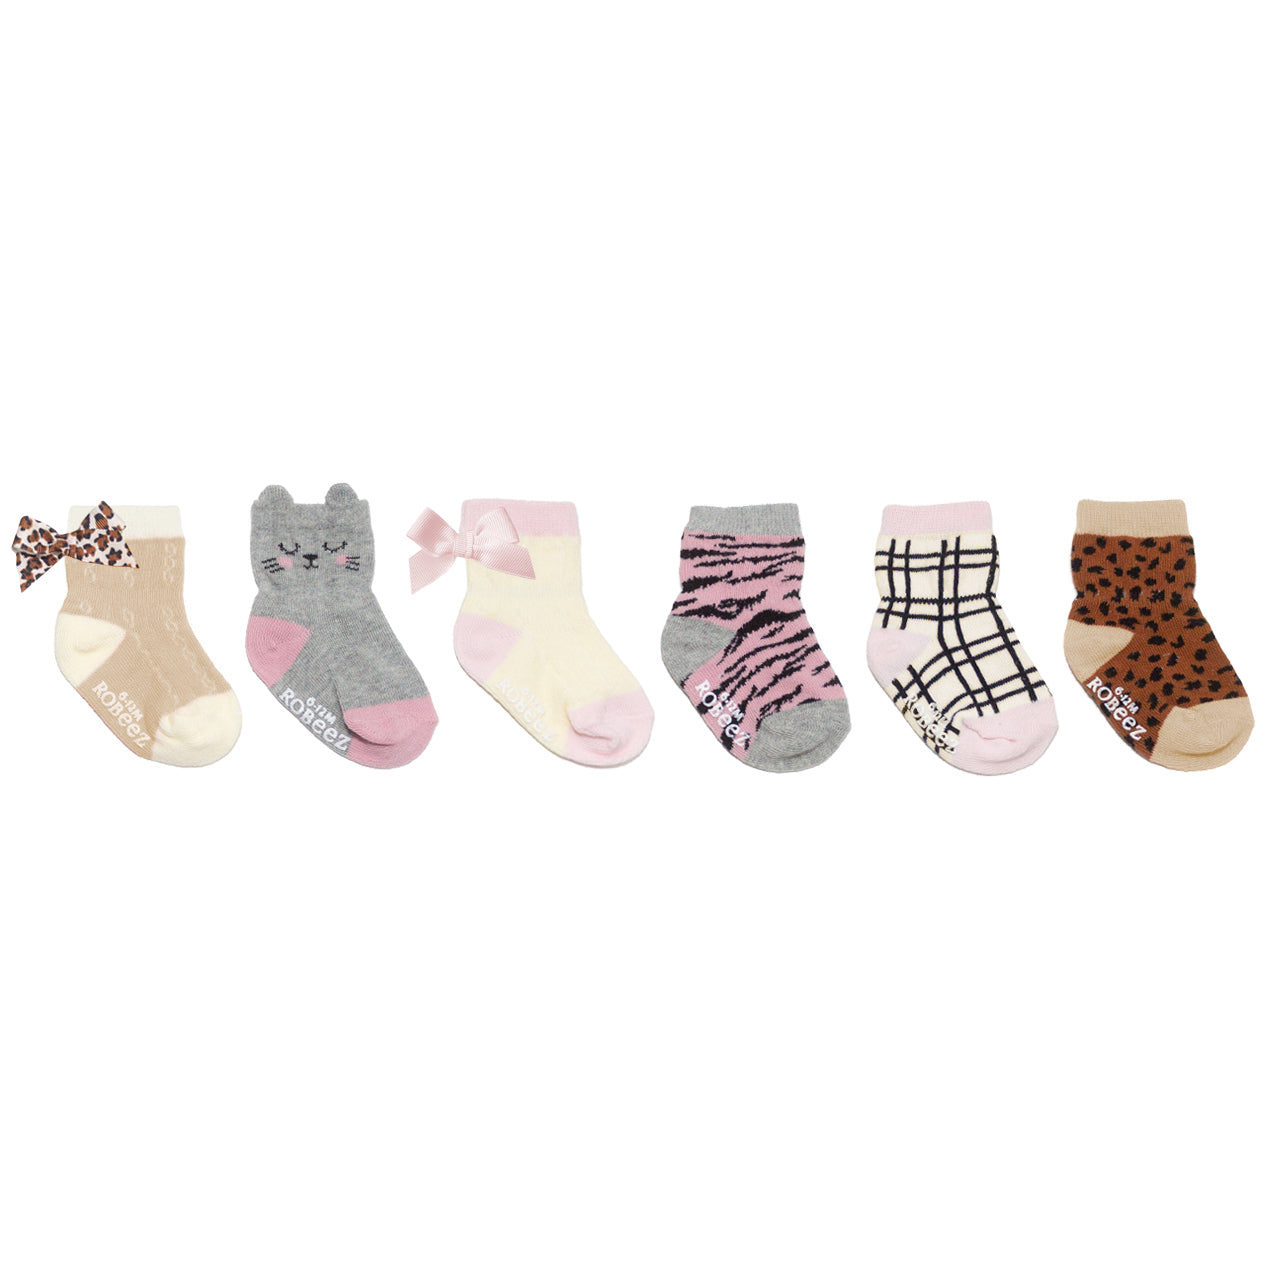 Robeez Infant Crew Socks 6-Pack / Girl - Purr-fect Kitty